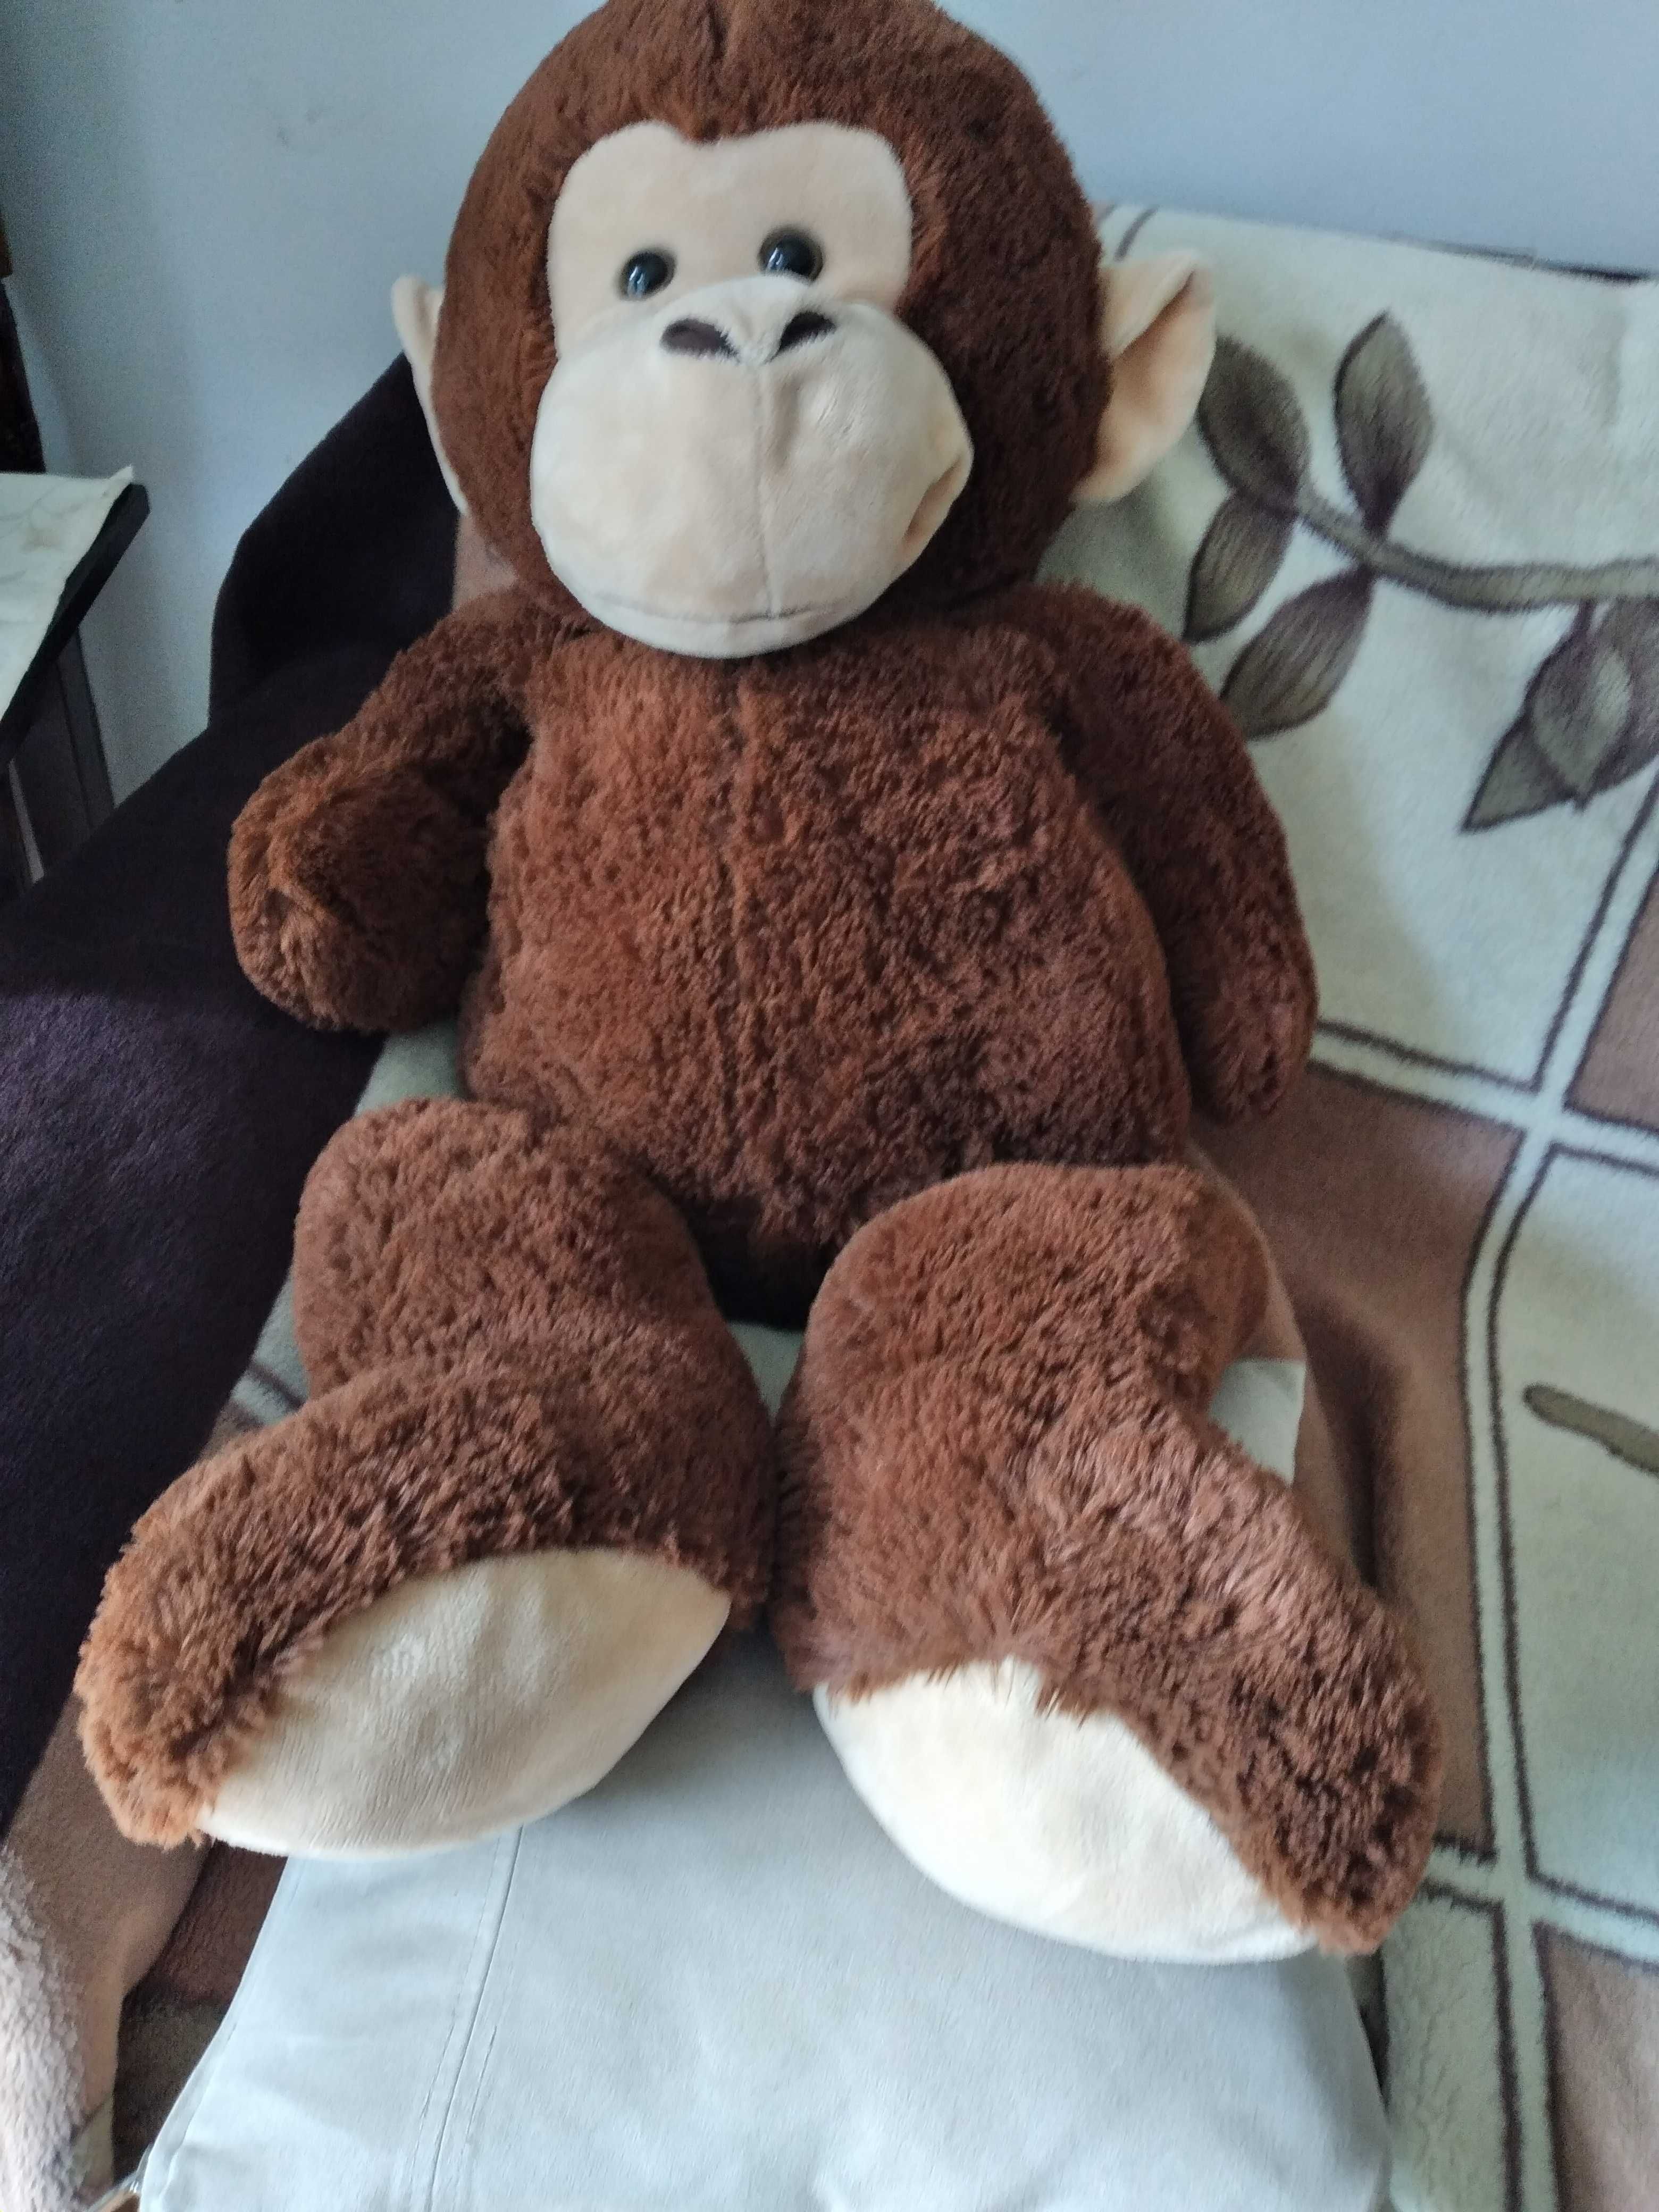 Zabawka pluszowa sympatyczna przytulanka małpka DUZA 100 cm.